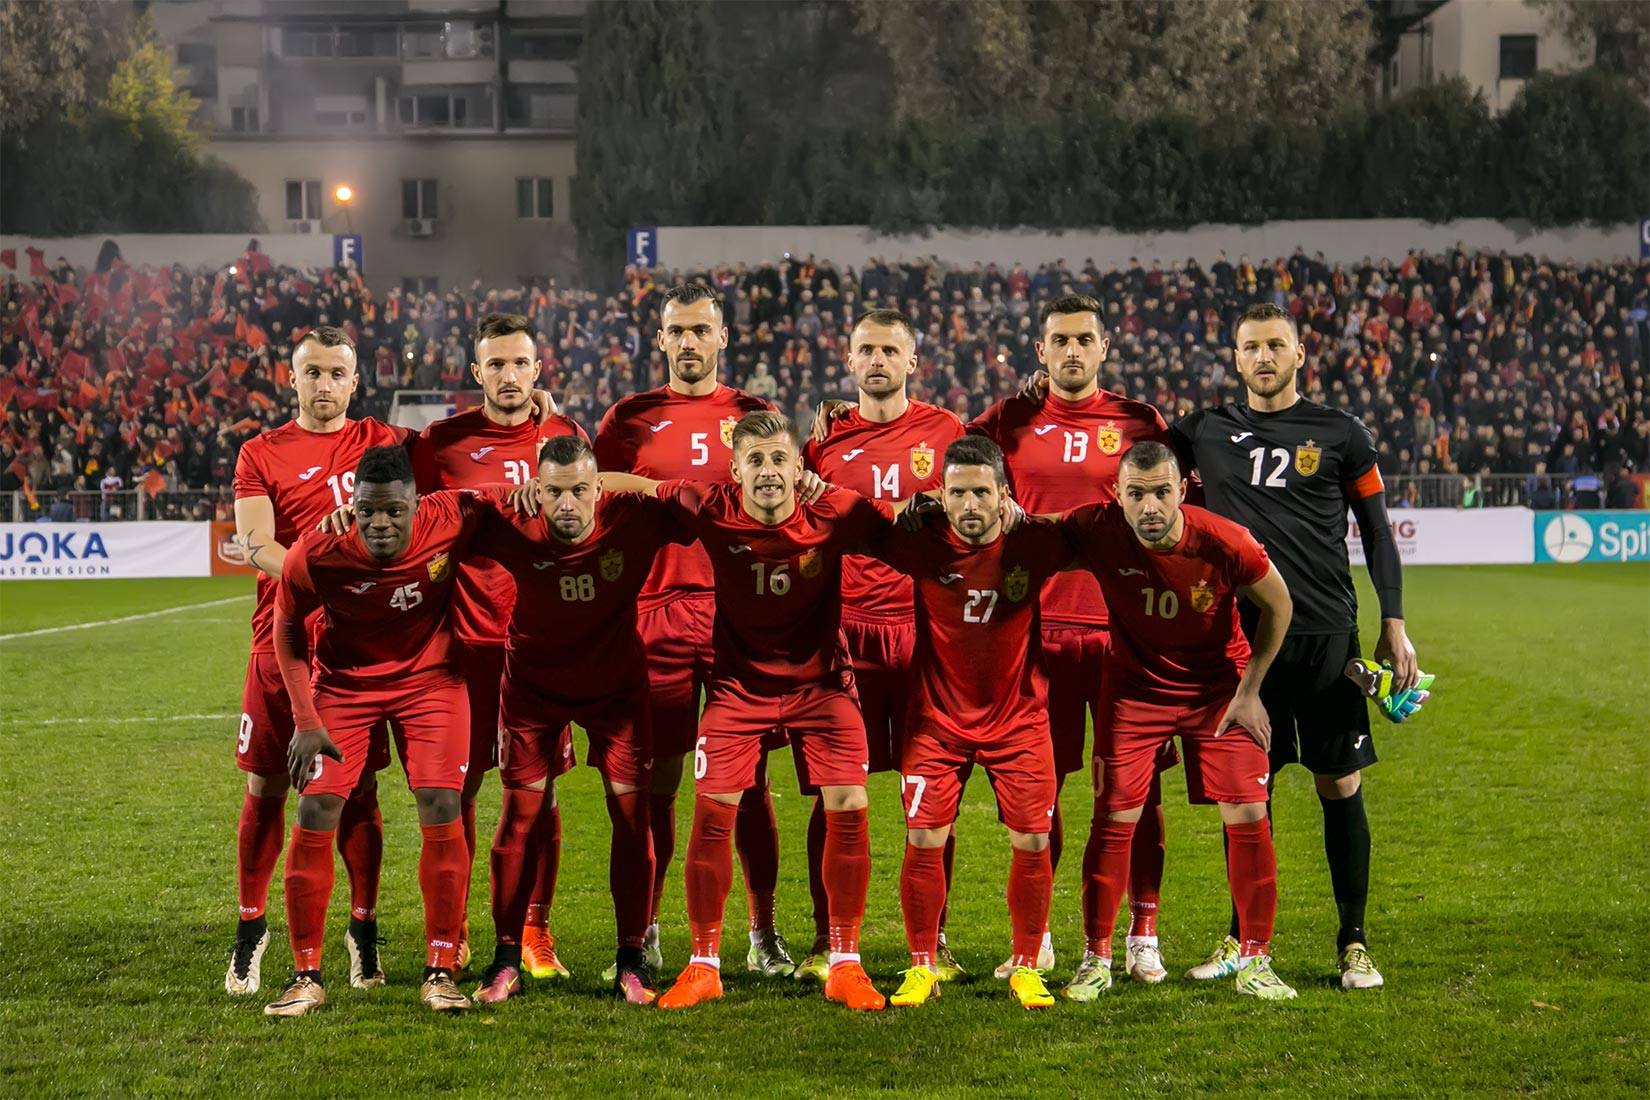 KF Tirana (Albania) Football Formation